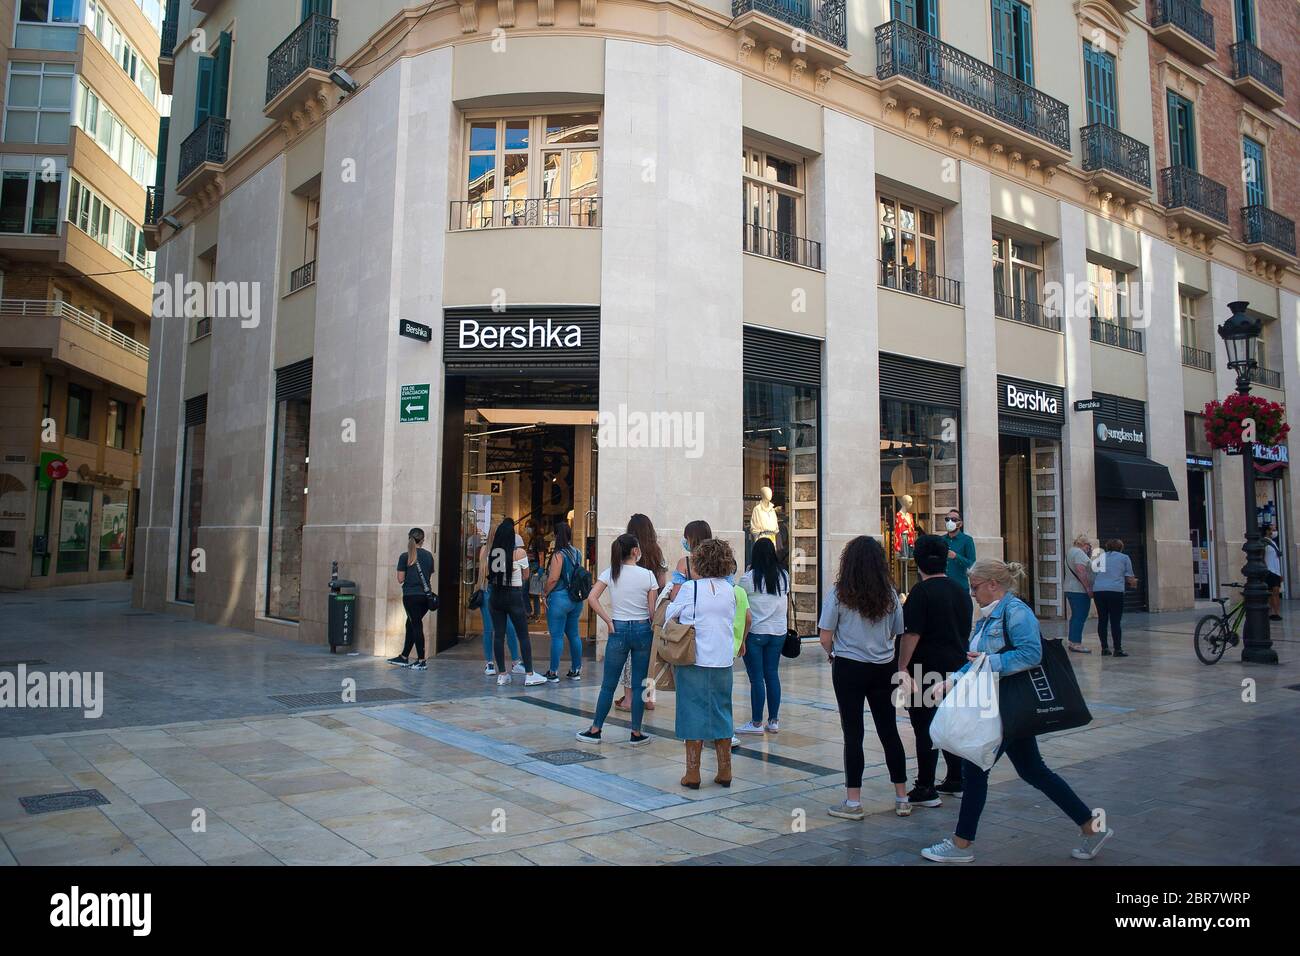 La gente espera en cola fuera de la tienda de ropa 'Bershka' en la calle  Marques de Larios durante un cierre parcial a nivel nacional. España está  pasando por un plan de